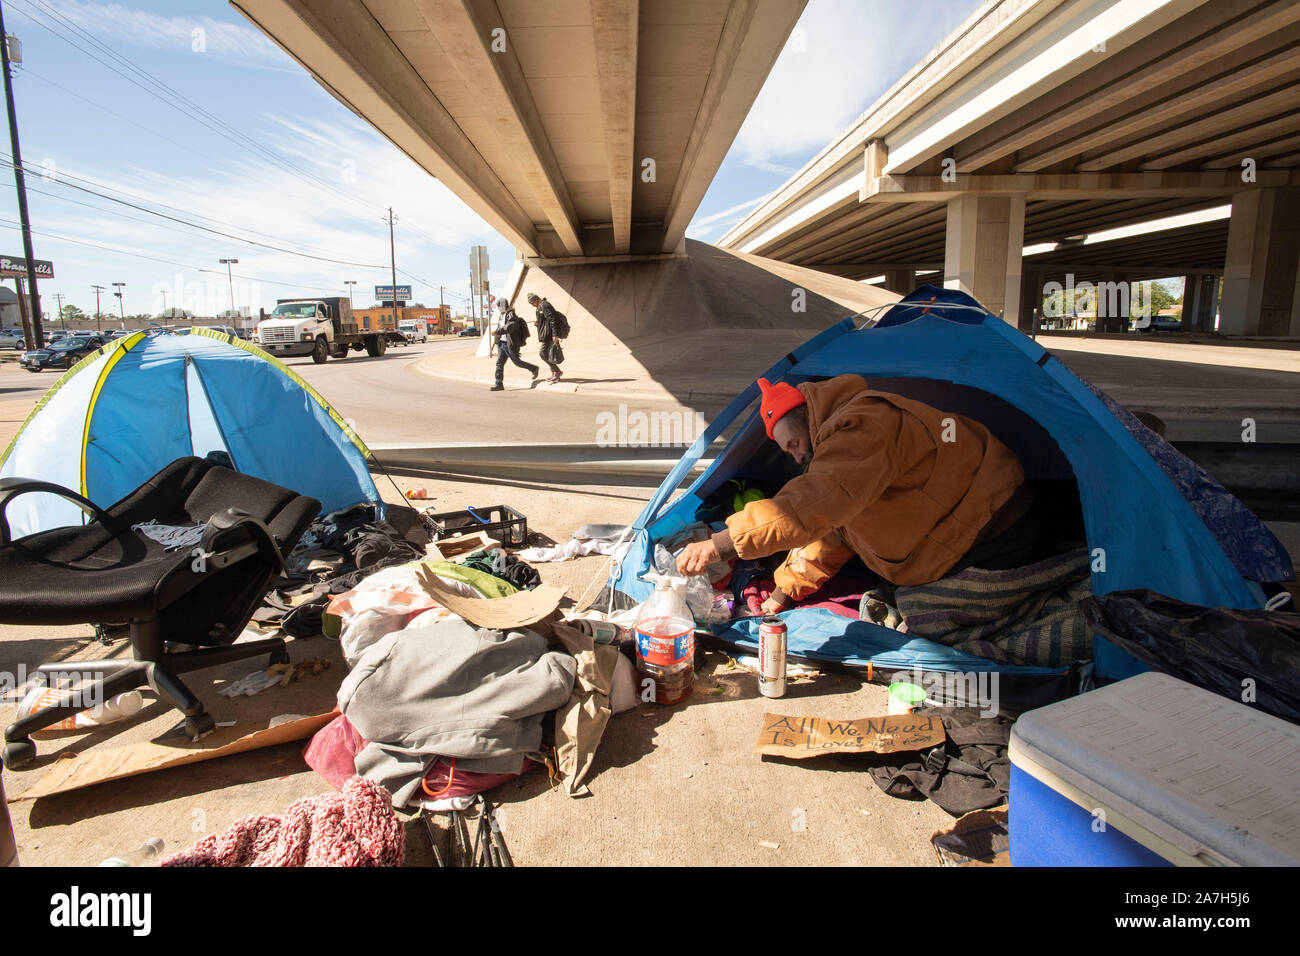 Giorni prima di una repressione minacciato dal governatore del Texas Greg Abbott sul diritto pubblico-di-modo camping, senzatetto Texans inclusi 'Corky', vi aspettano al governatore e autostrada azioni di reparto. La maggior parte sono sicuri dove andranno come rifugi locali sono al di sopra della capacità. Foto Stock